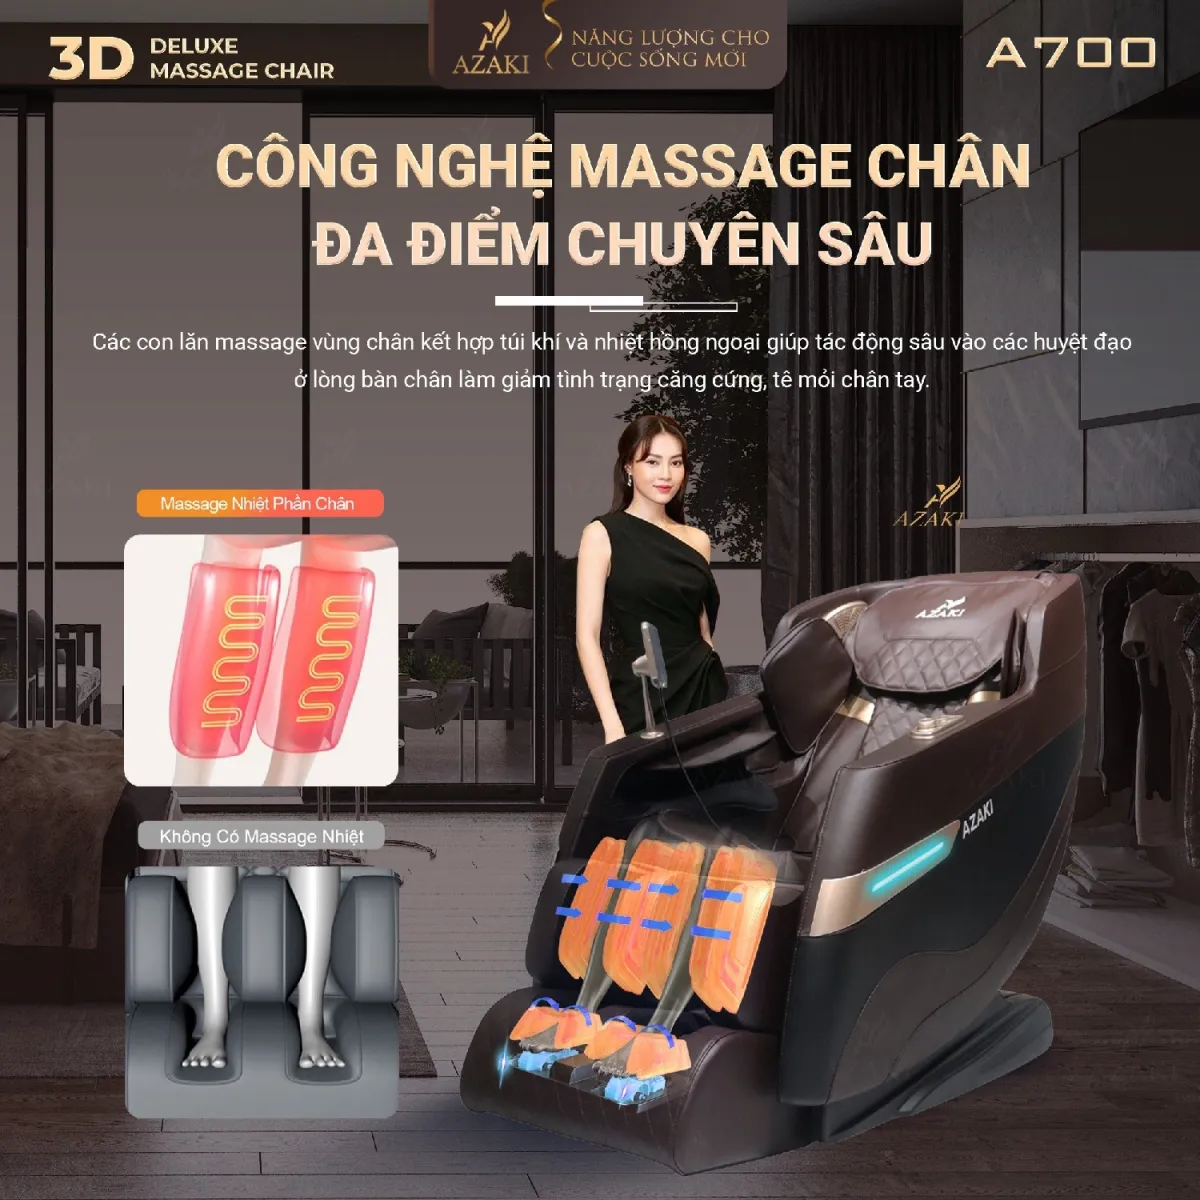 Công nghệ massage chân đa điểm chuyên sâu của ghế Massage Azaki A700 - Nâu Chính Hãng